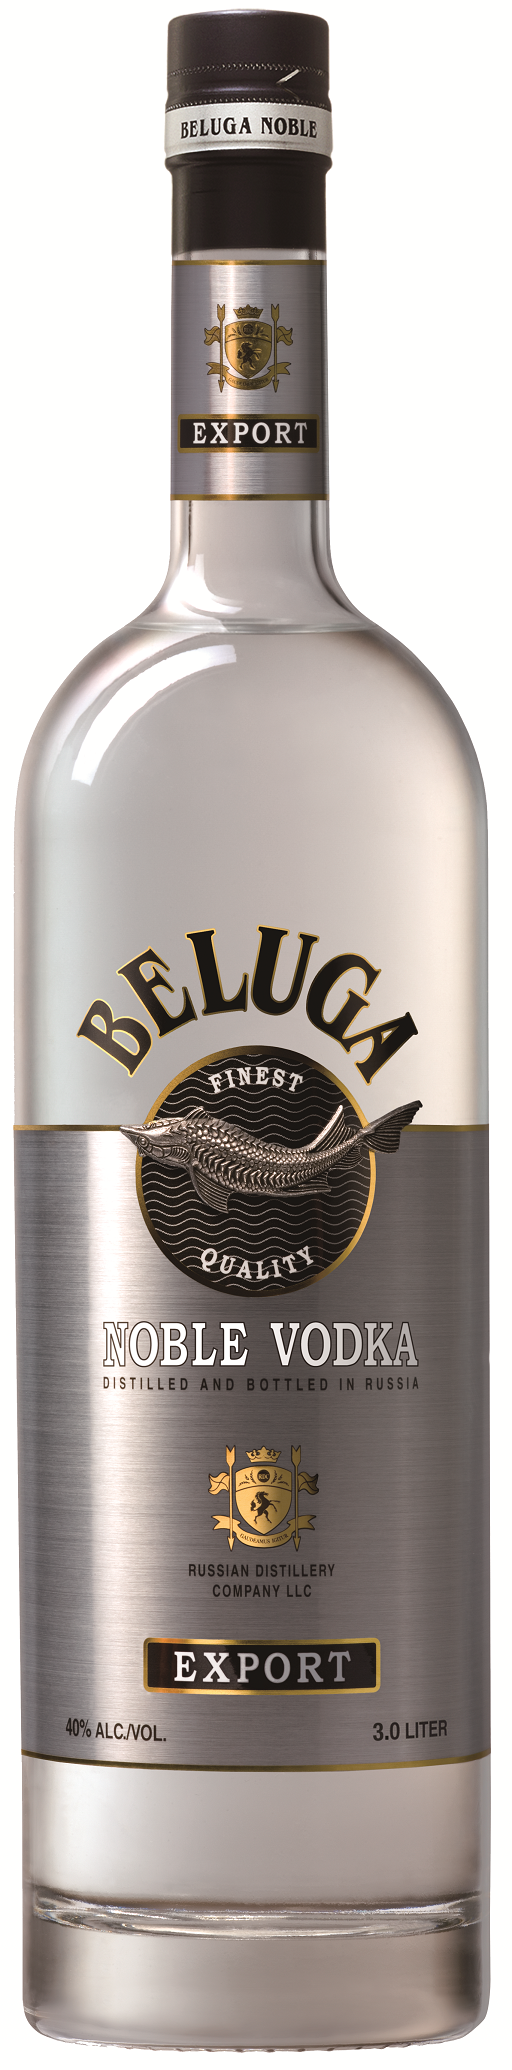 Beluga Noble Vodka 3 l